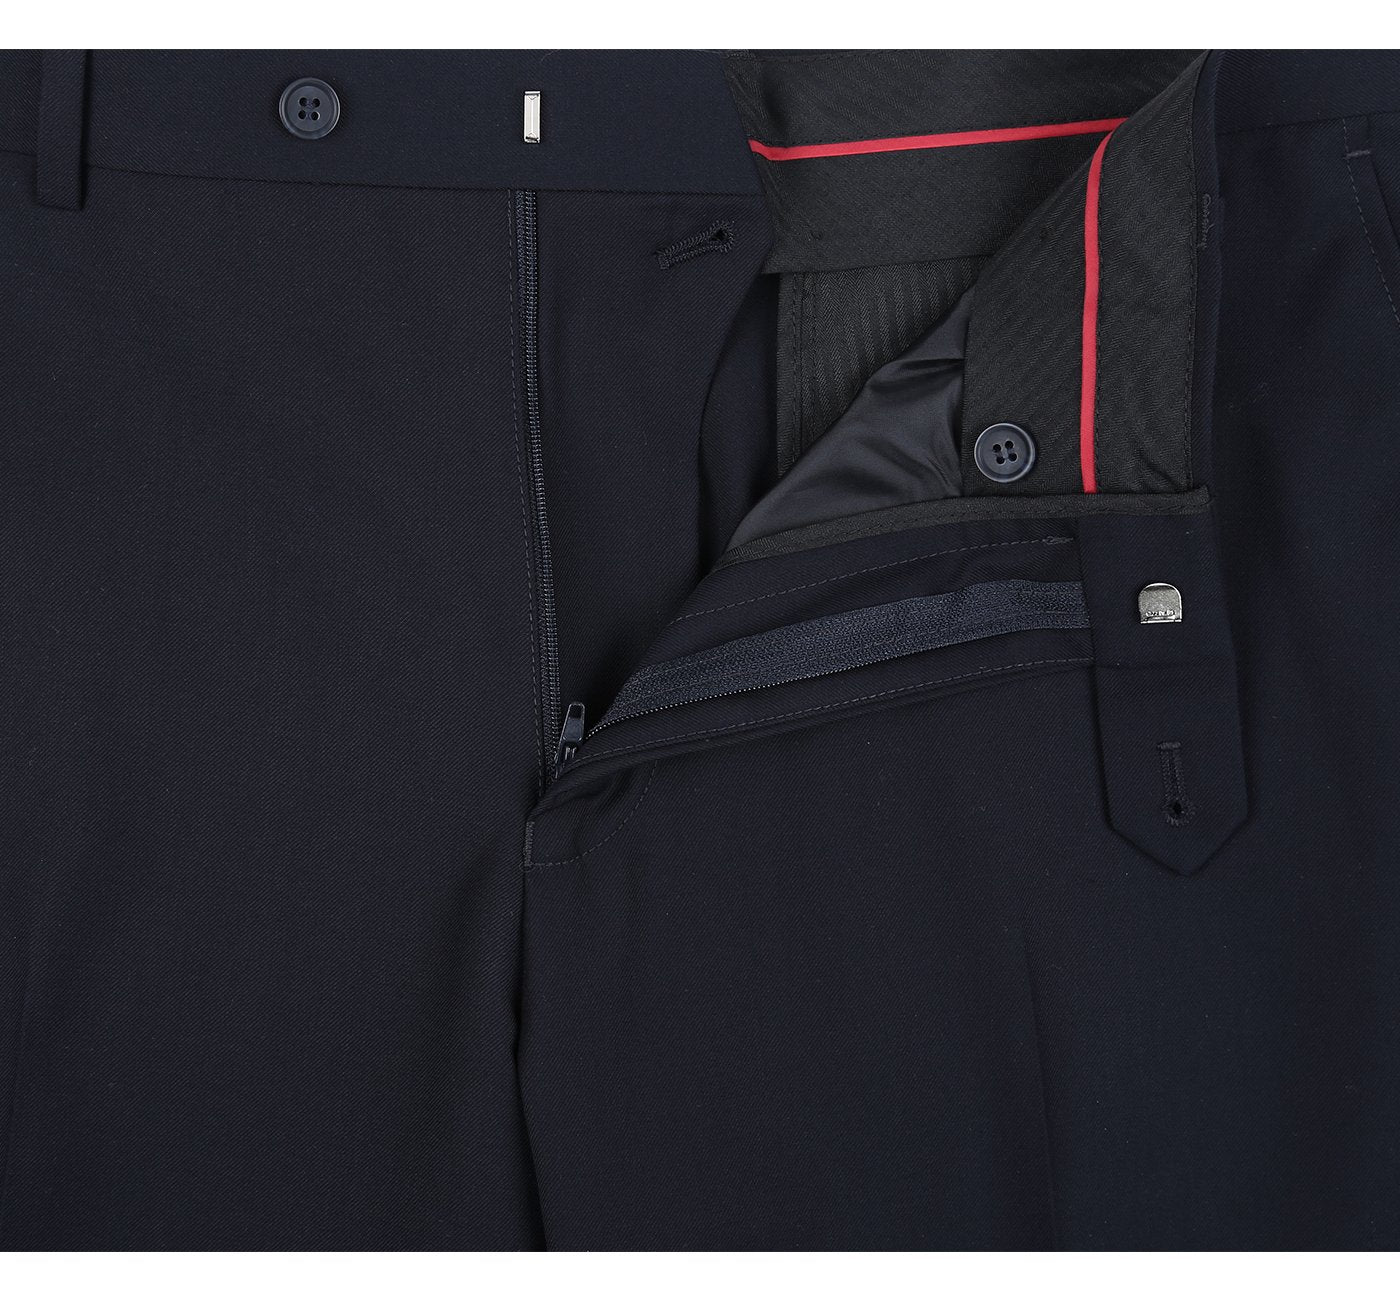 201-2 Men's Dark Navy Flat Front Suit Separate Pants